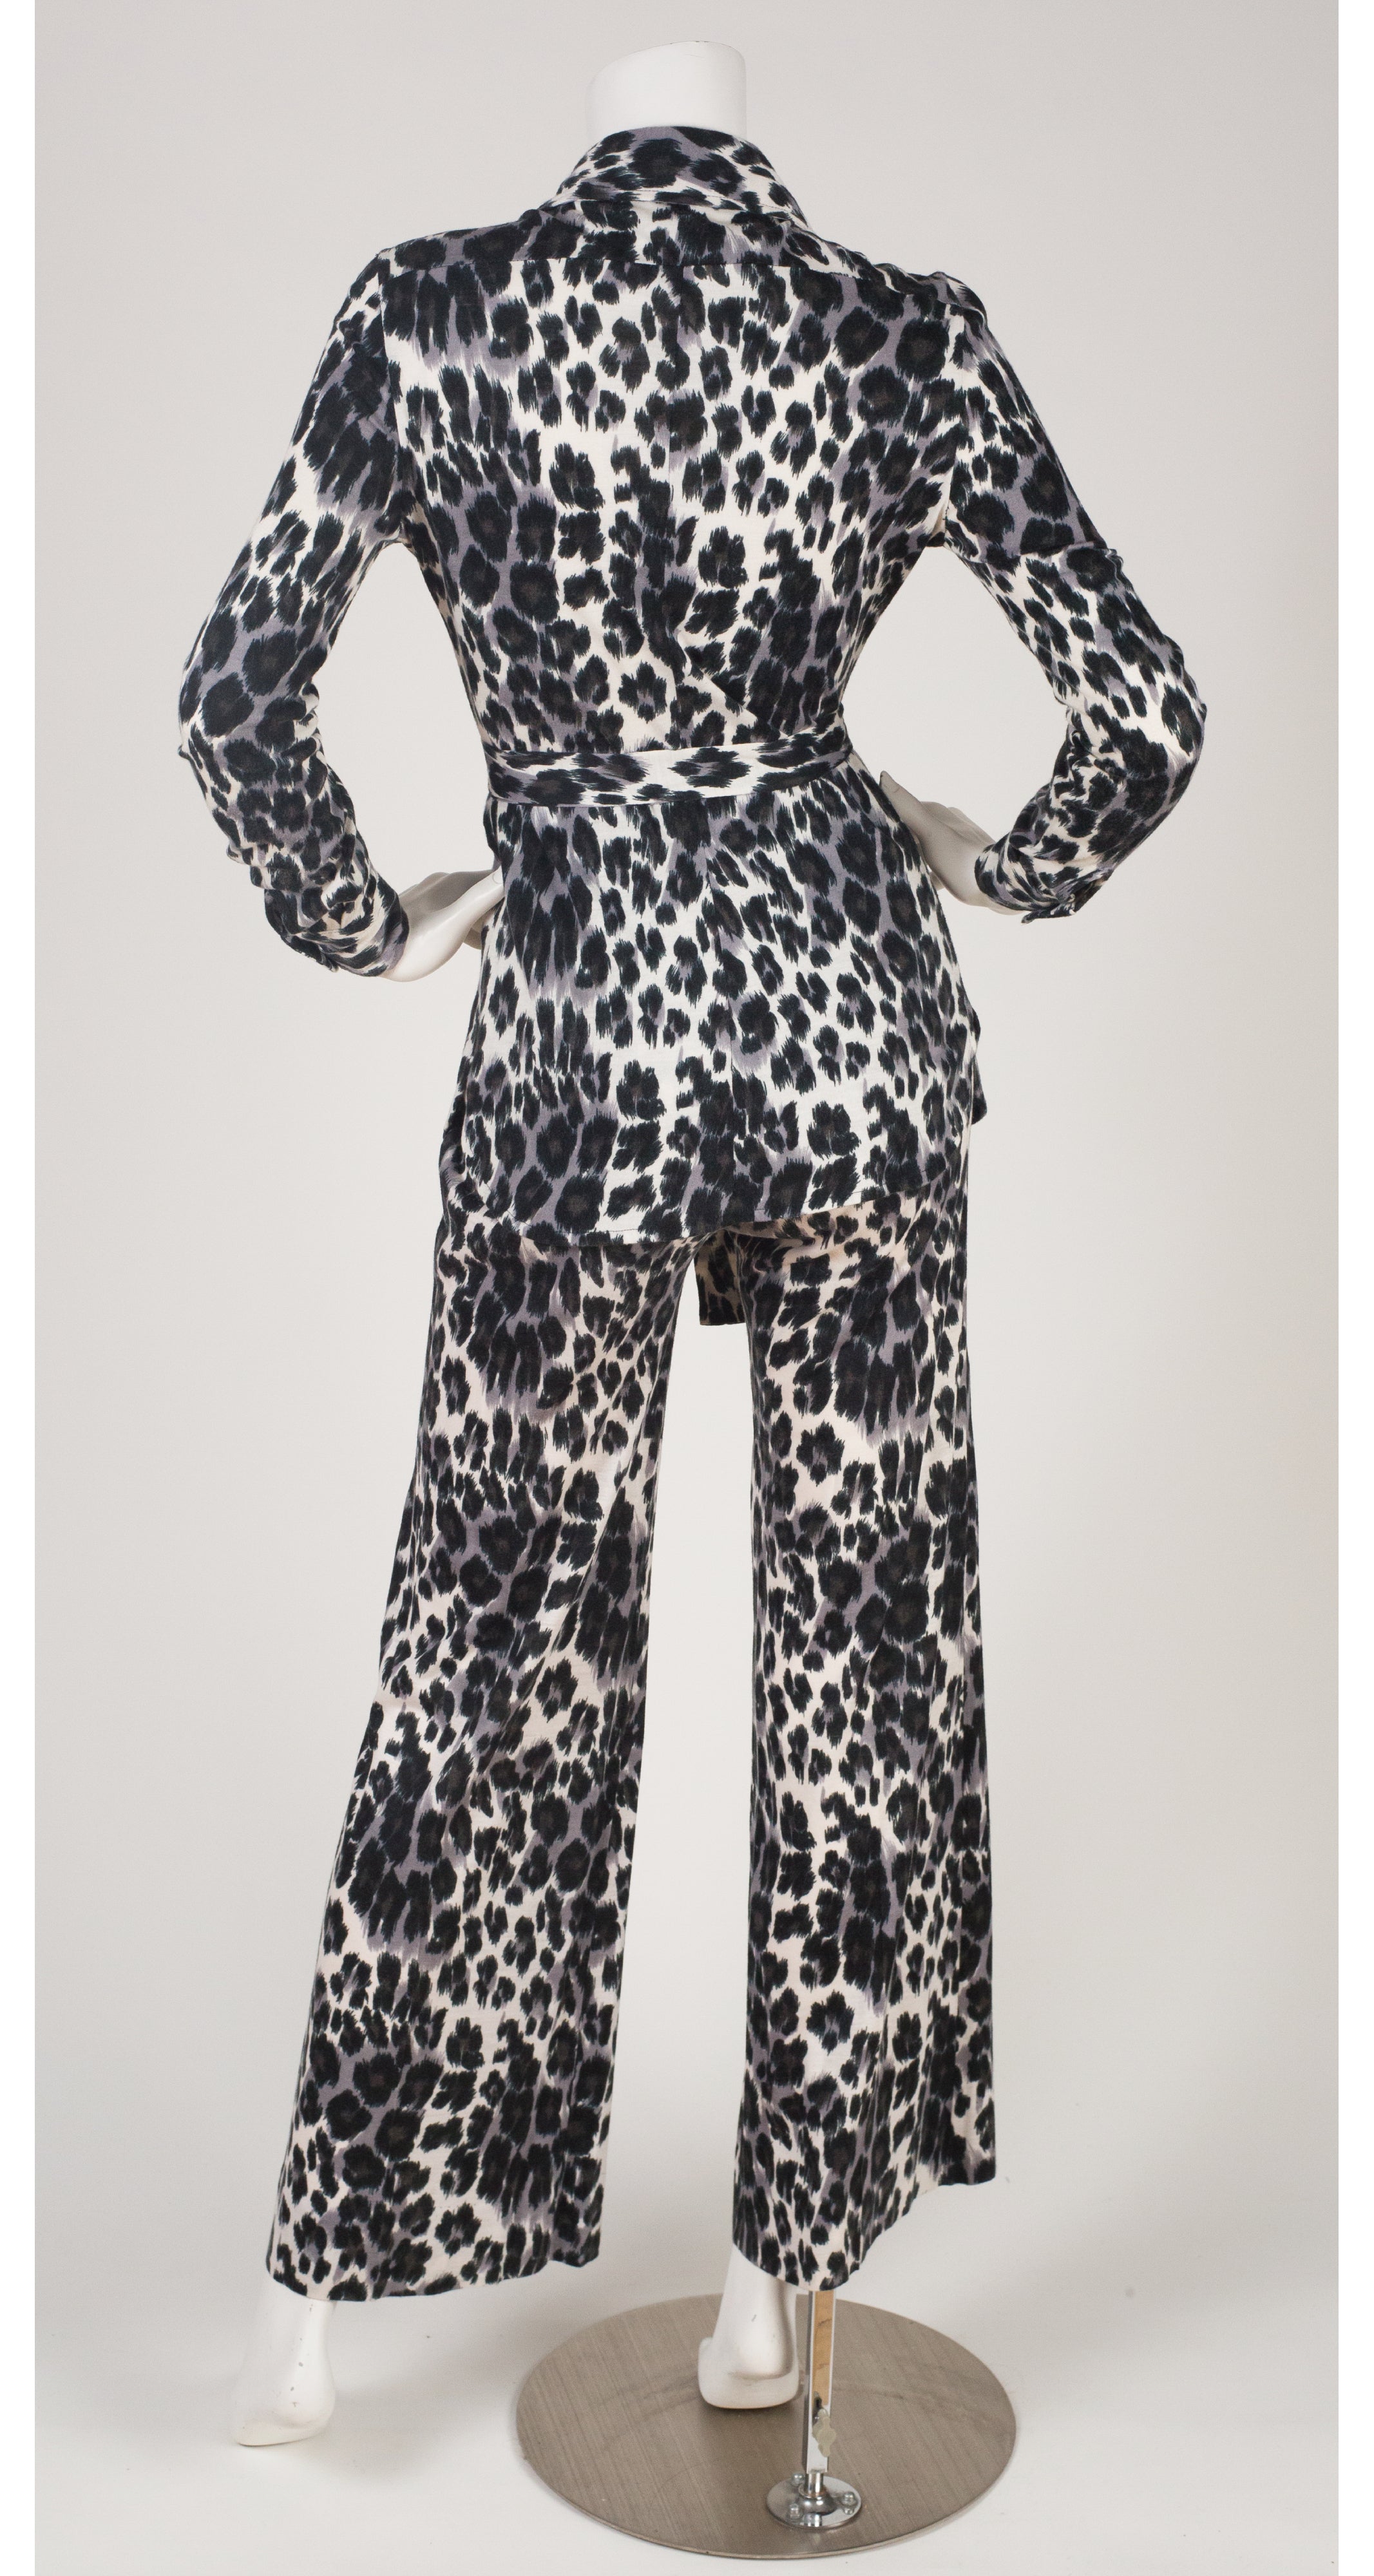 1974 Leopard Print White Jersey Pant Suit